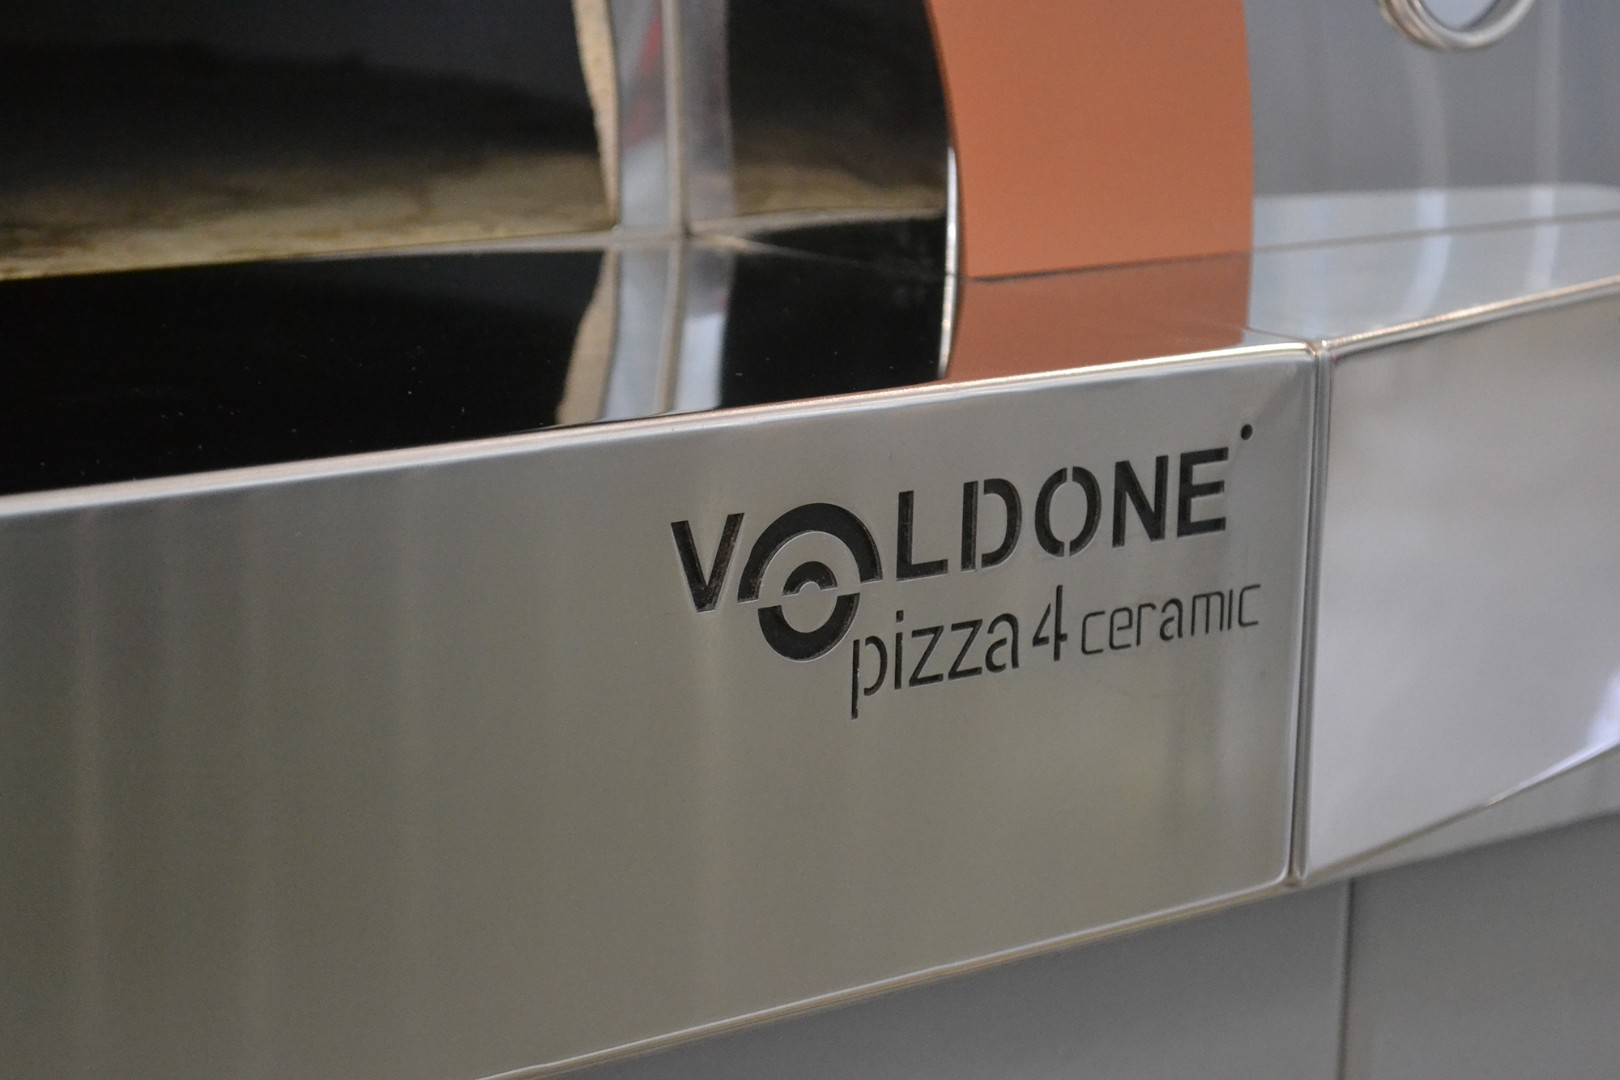 НОВИНКА в линейке дровяных пицца-печей VOLDONE!